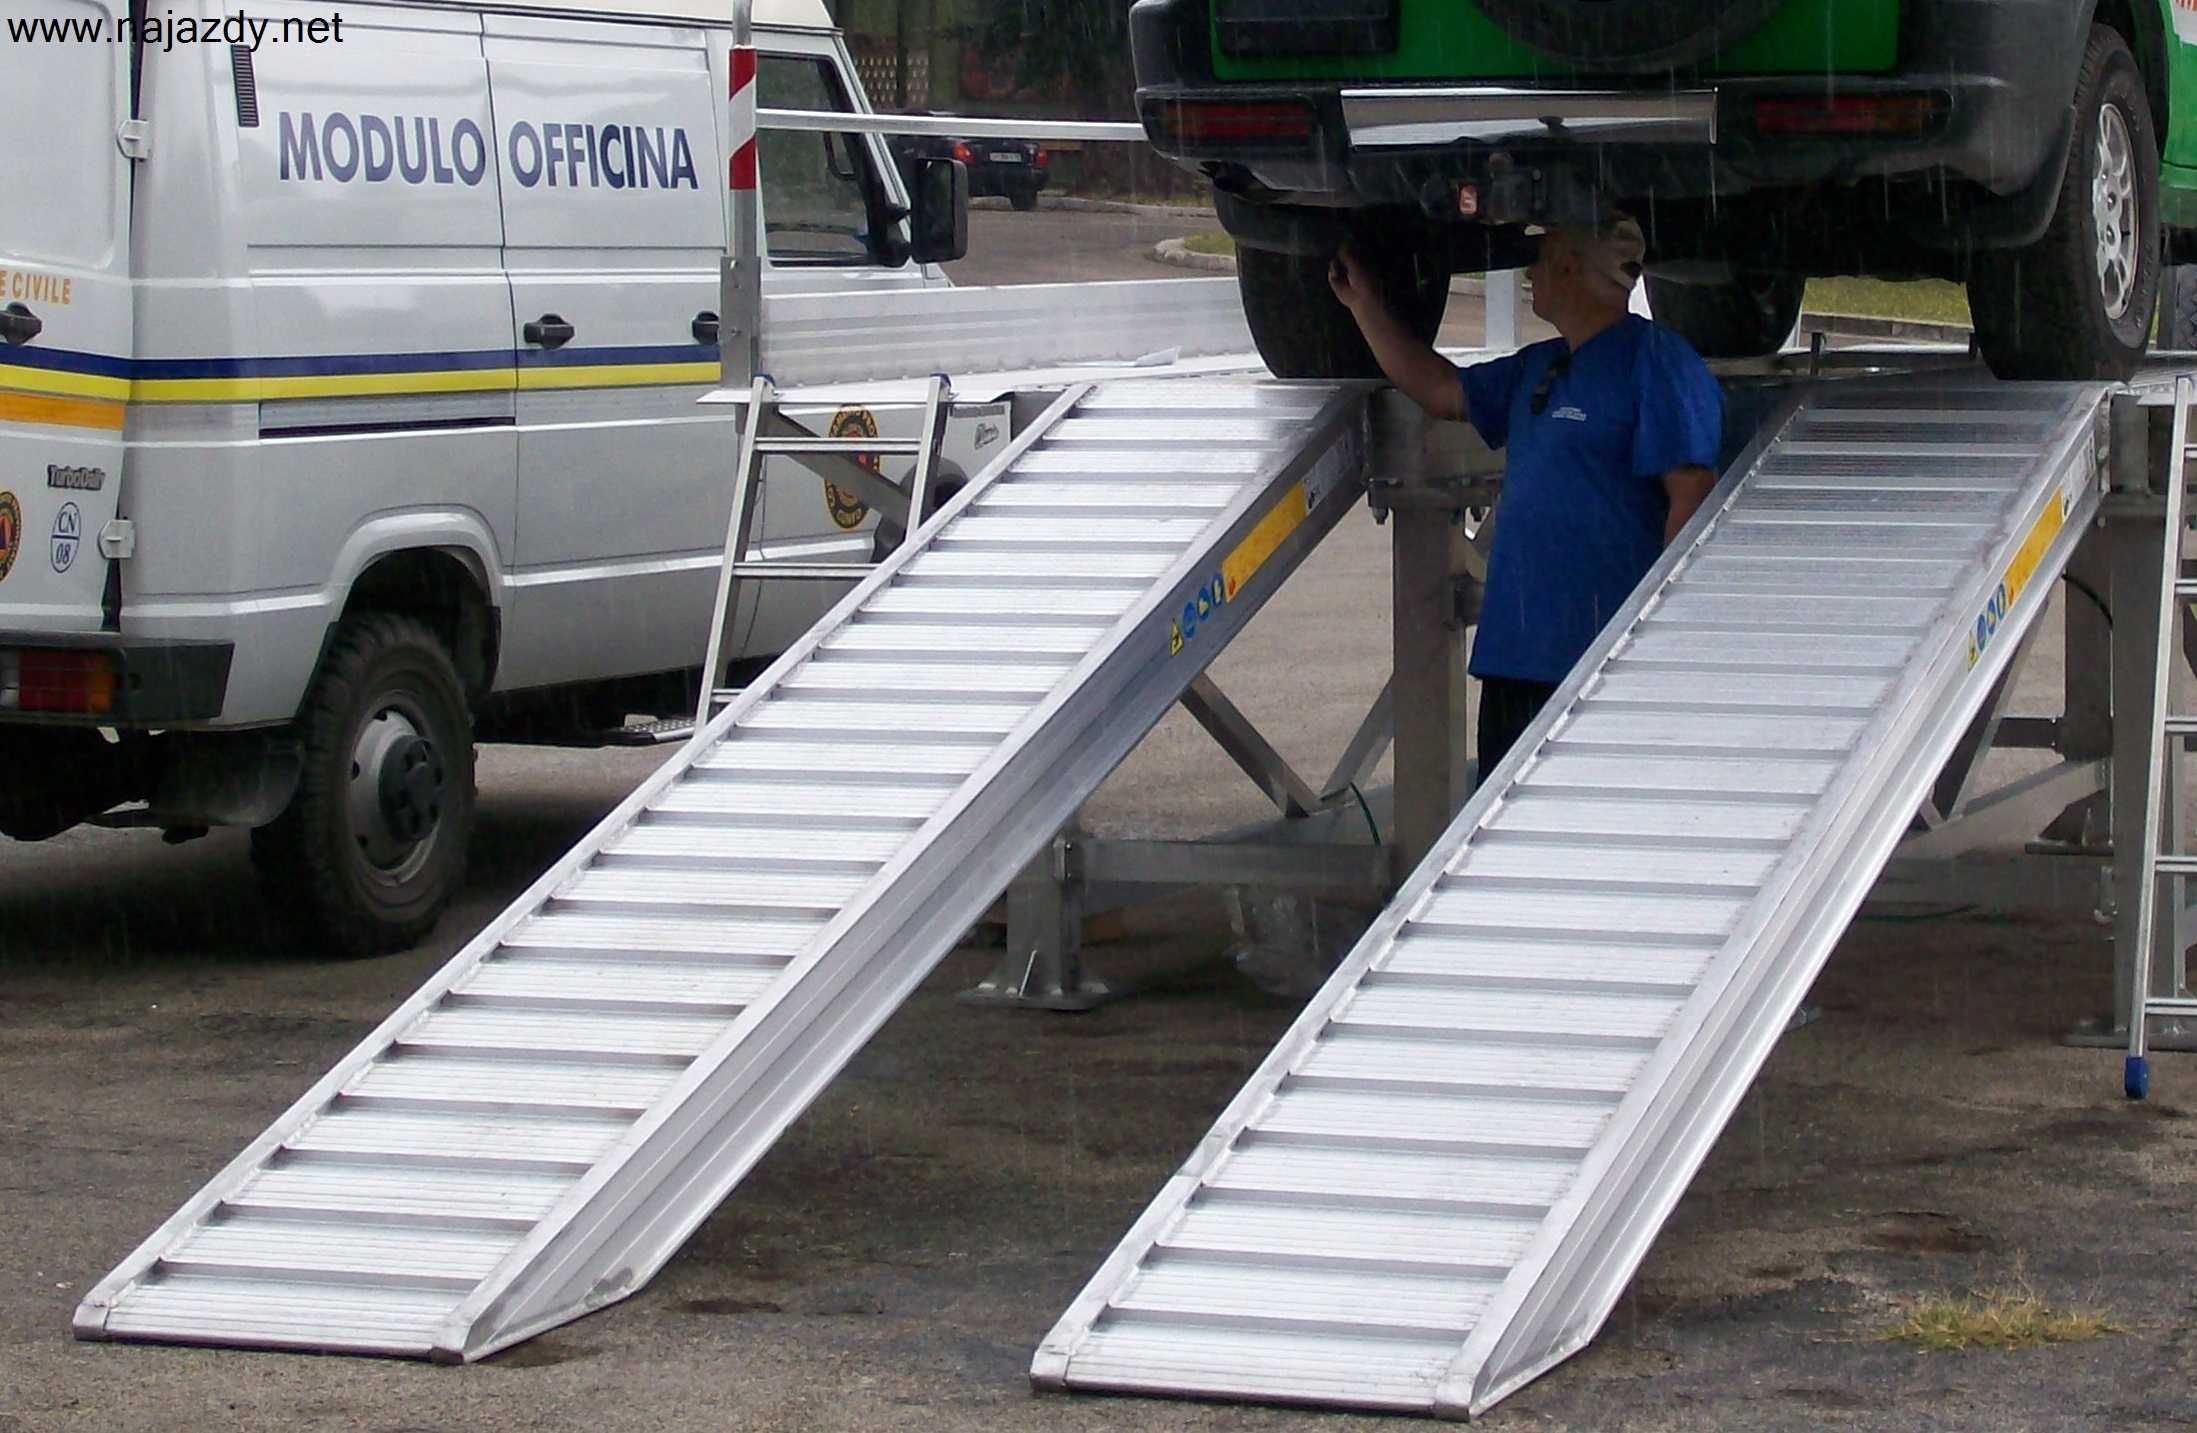 Najazdy Aluminiowe 4m 4000kg /Włoskie/ Tax Free